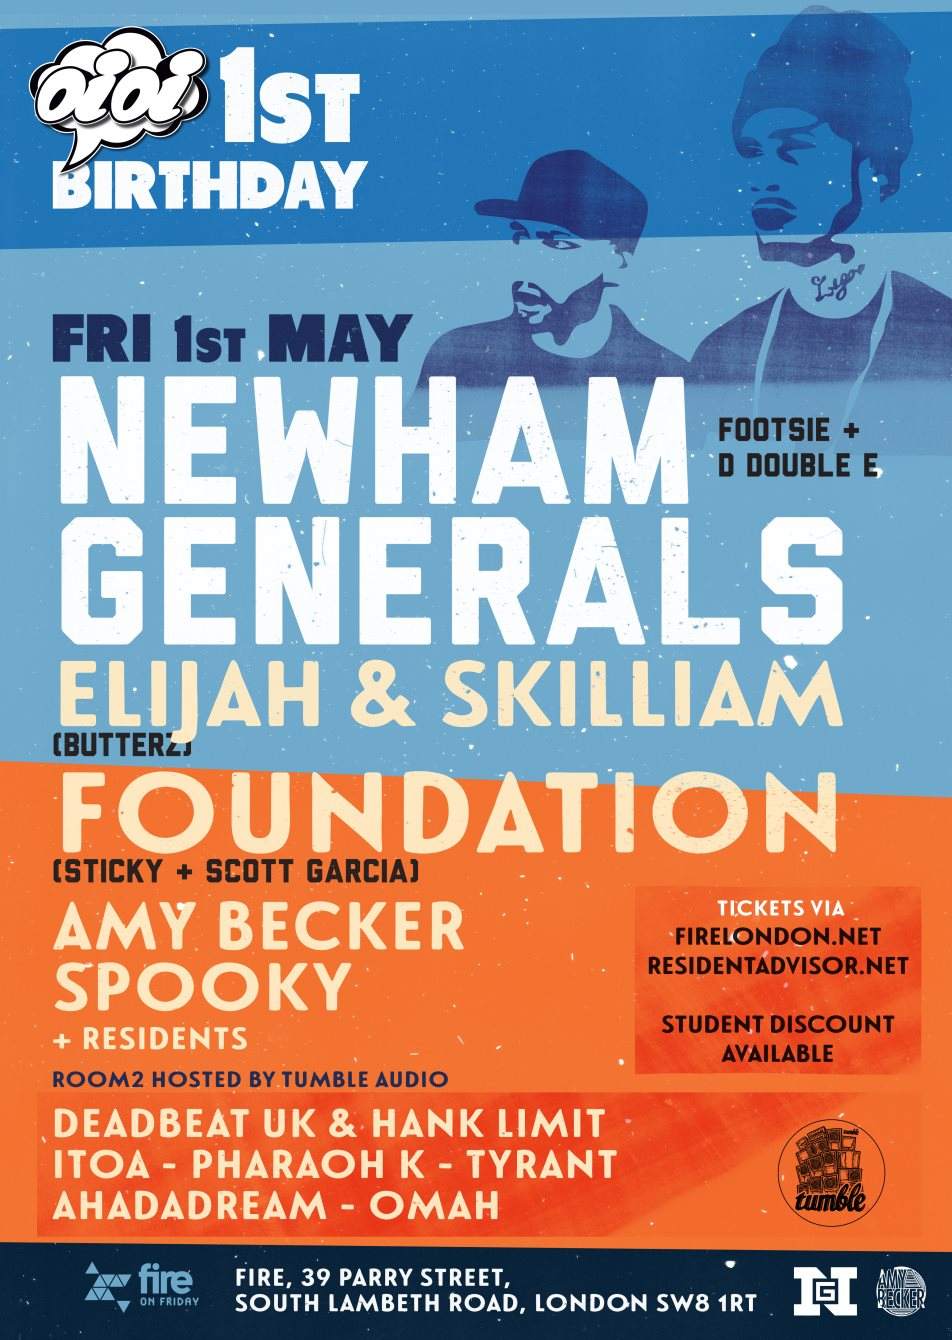 Oioi 1st Birthday with Newham Generals + Elijah & Skilliam - フライヤー表